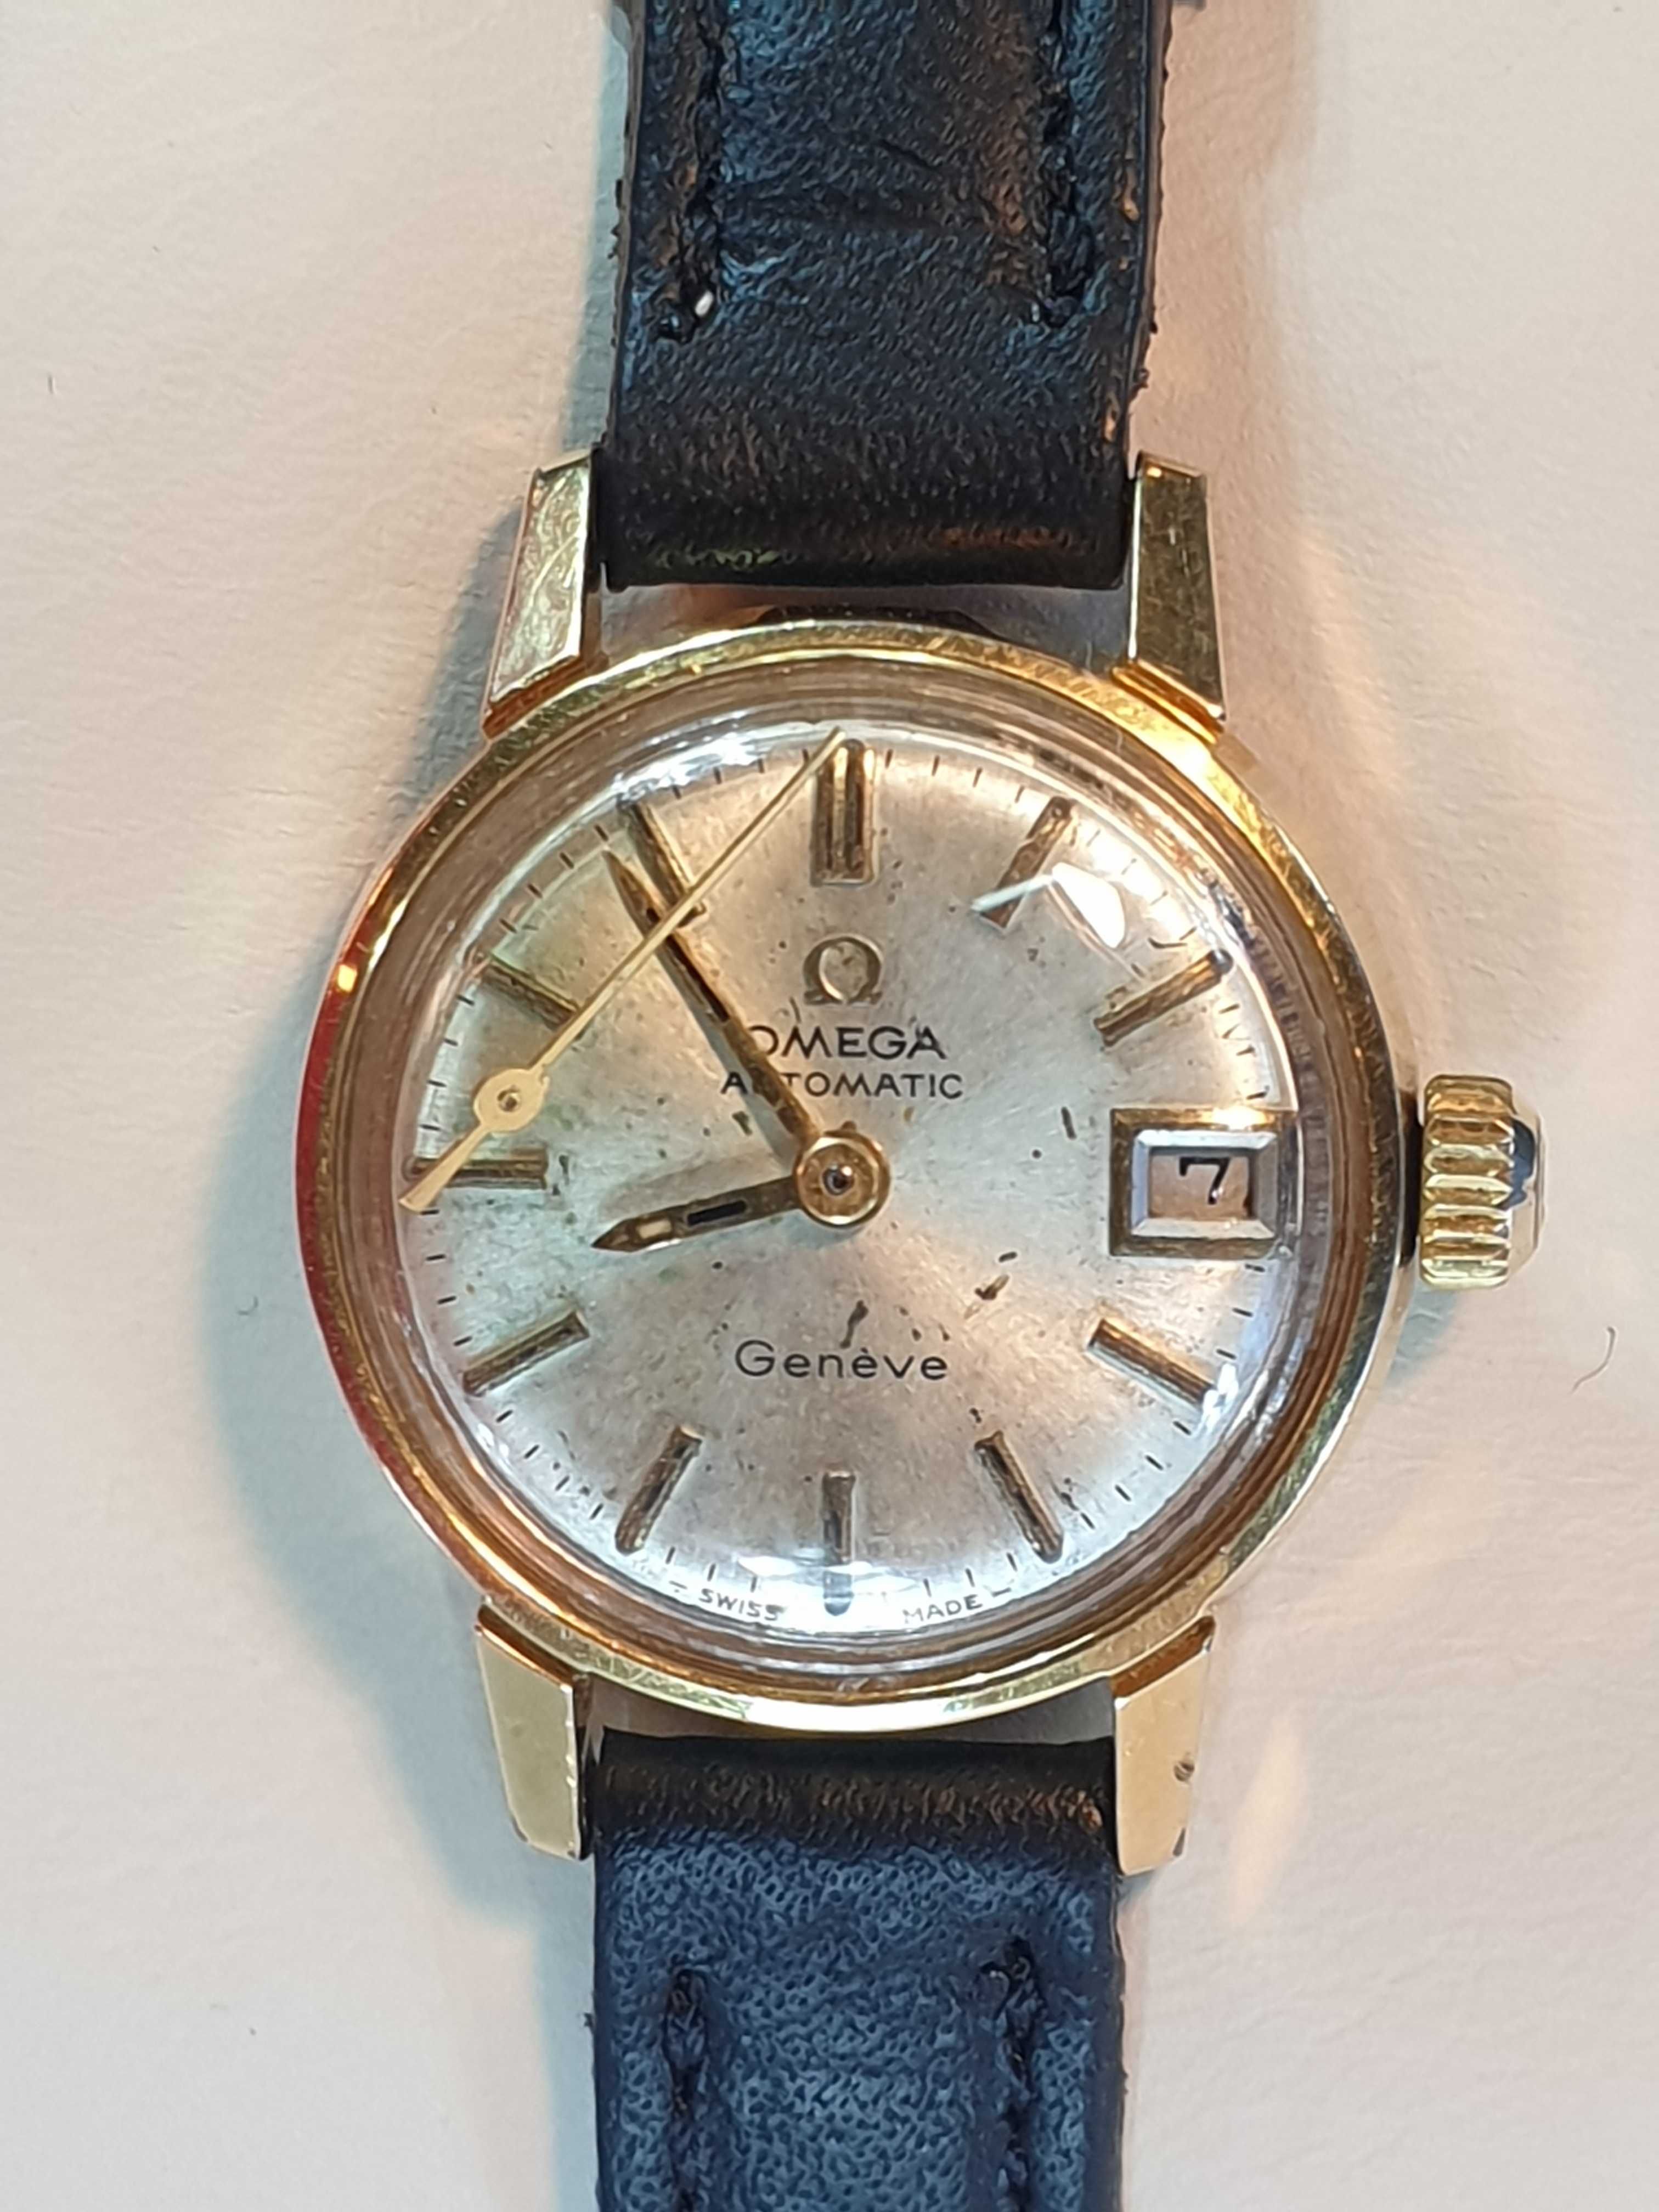 Damski oryginalny zegarek Omega Geneve automatic cal.684 do naprawy